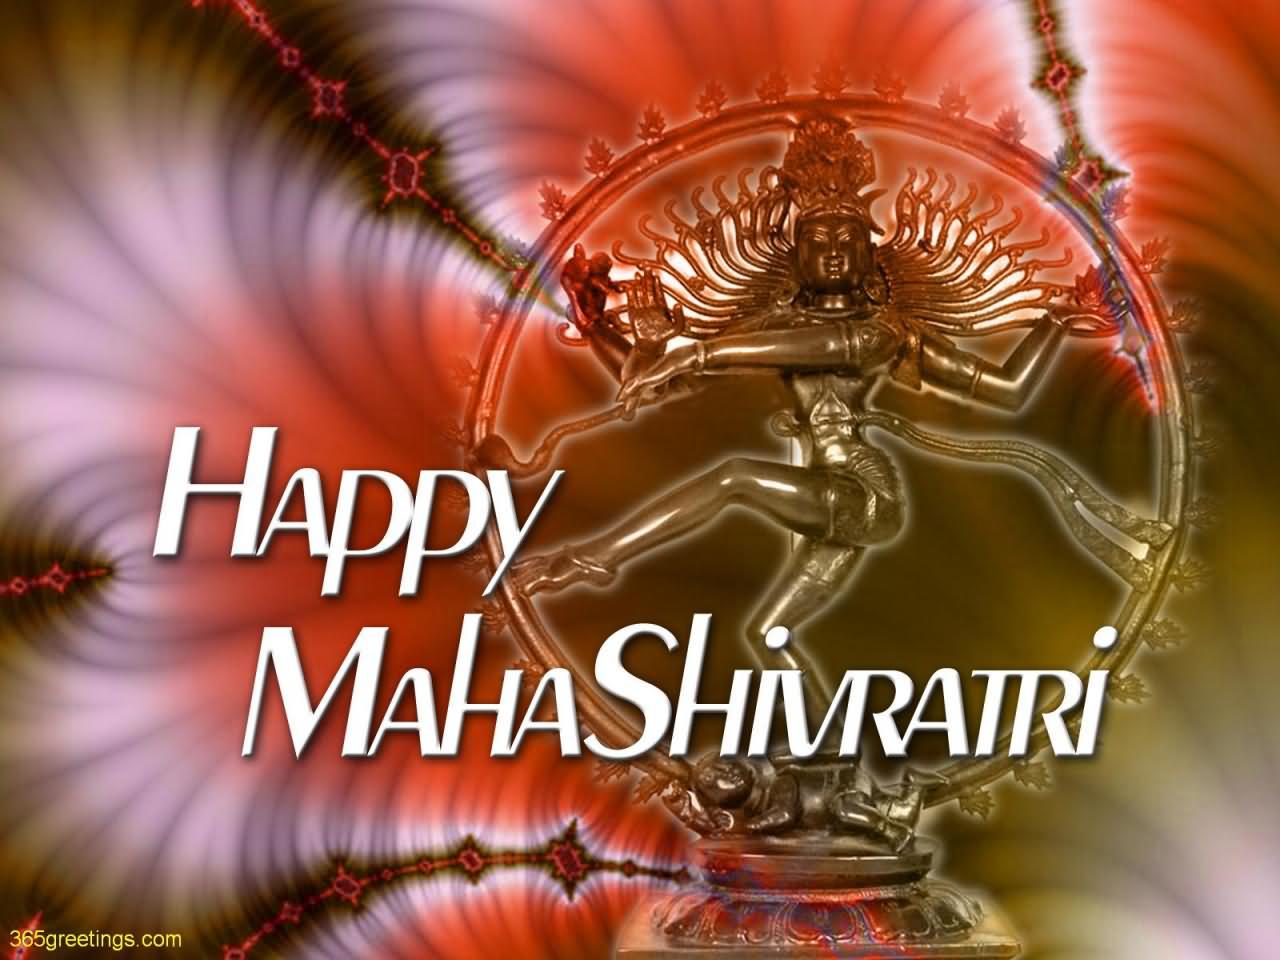 Happy Mahashivaratri To You